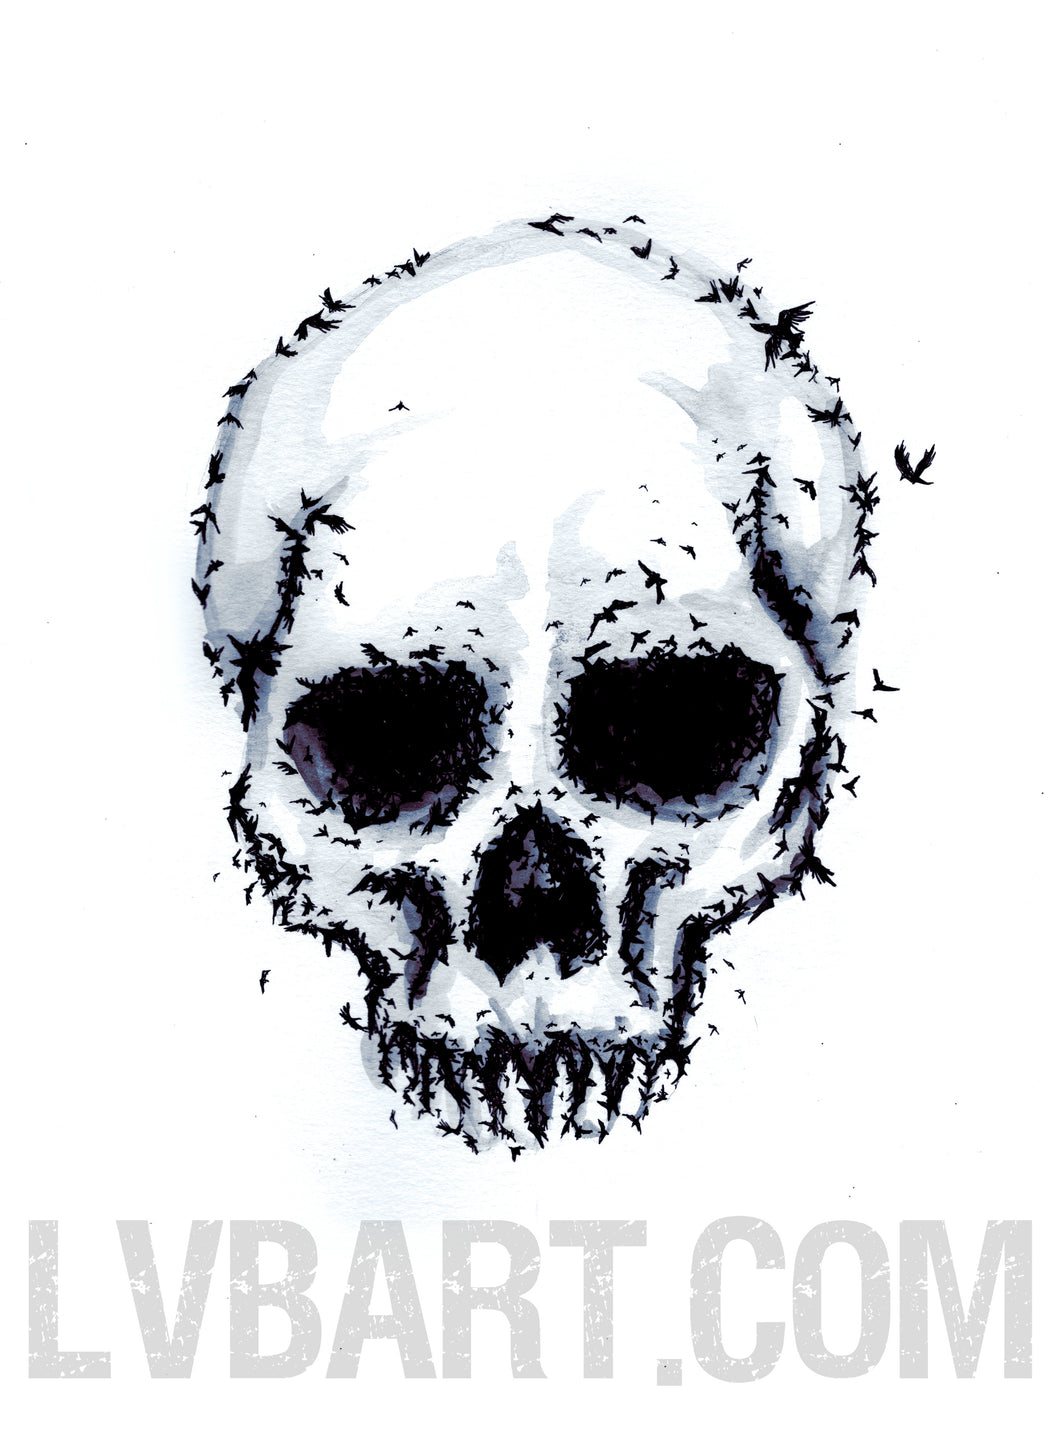 Murder Skull Fine Art Print